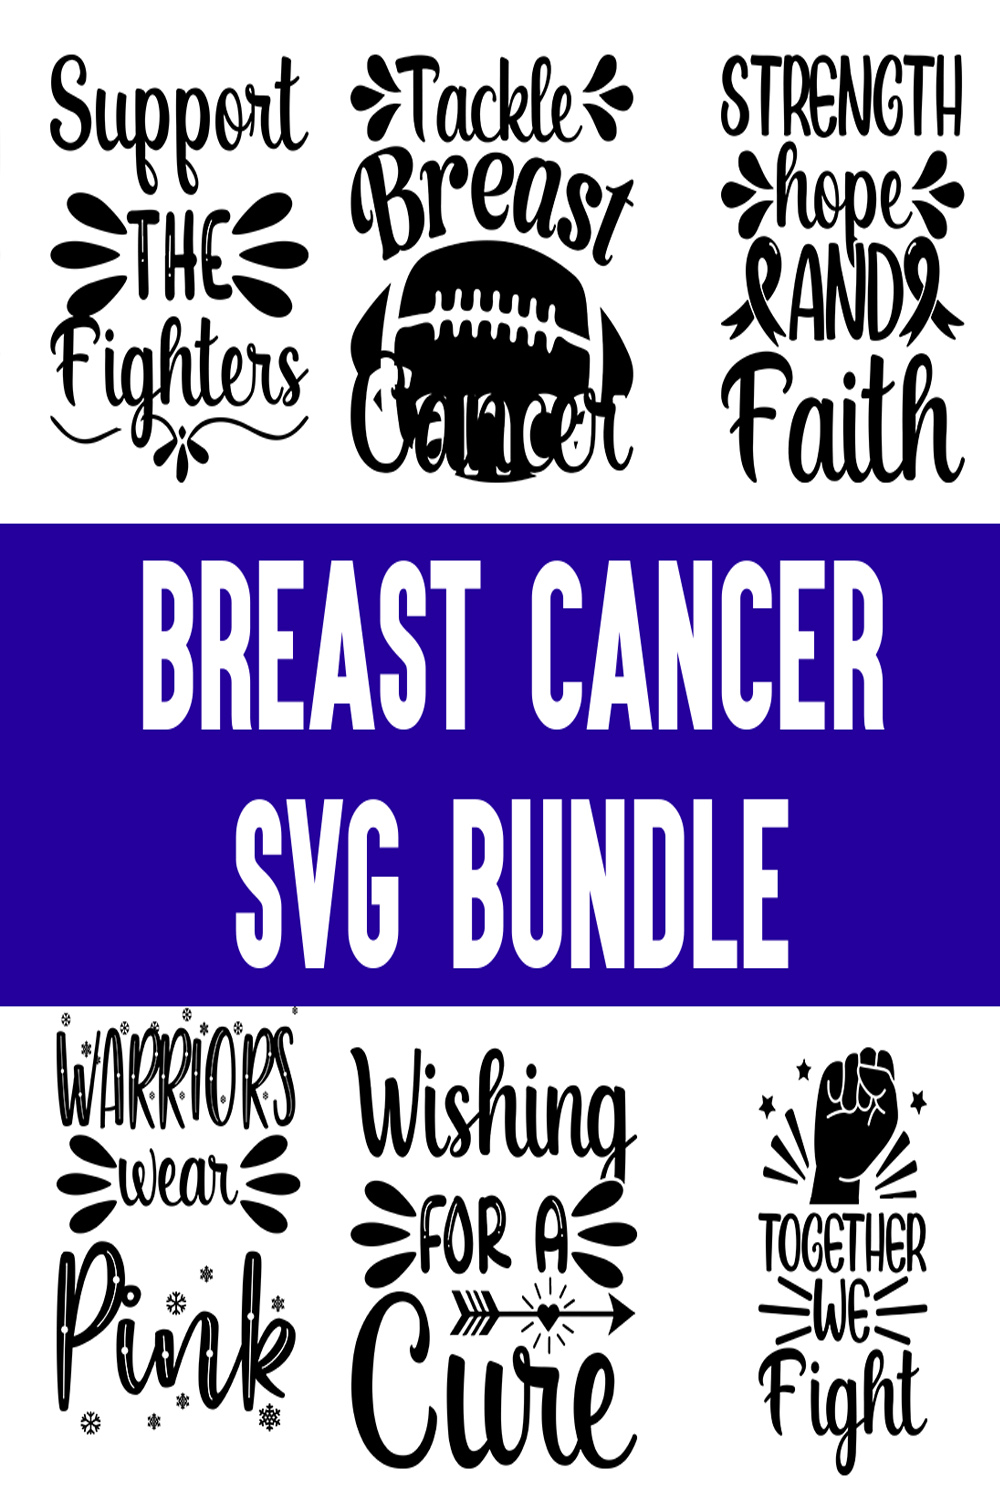 Breast Cancer svg Bundle pinterest preview image.